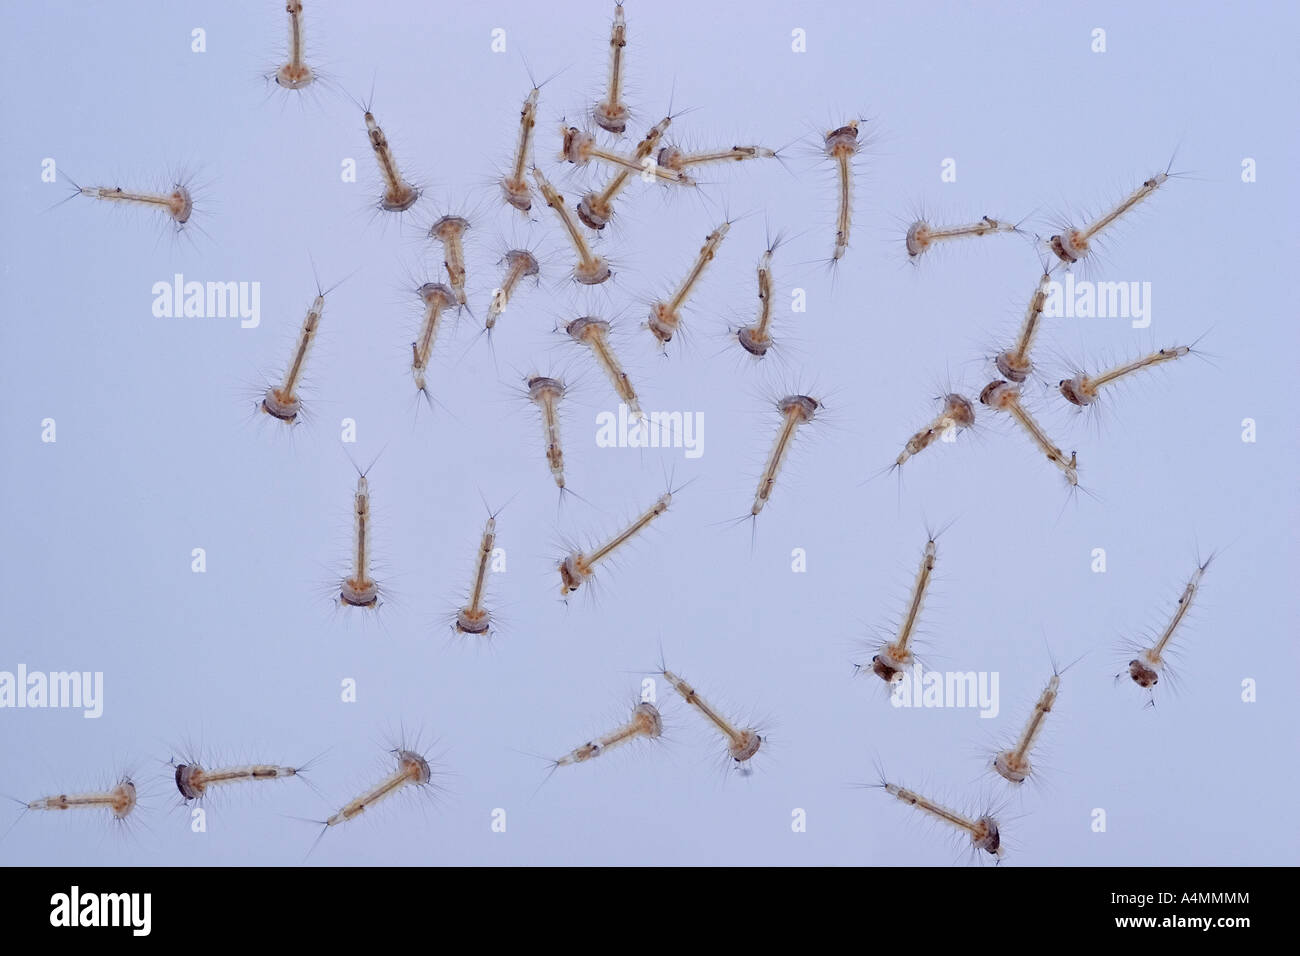 Larvae of common mosquitos (Culex pipiens).  Larves de moustiques domestiques communs (Culex pipiens). Stock Photo